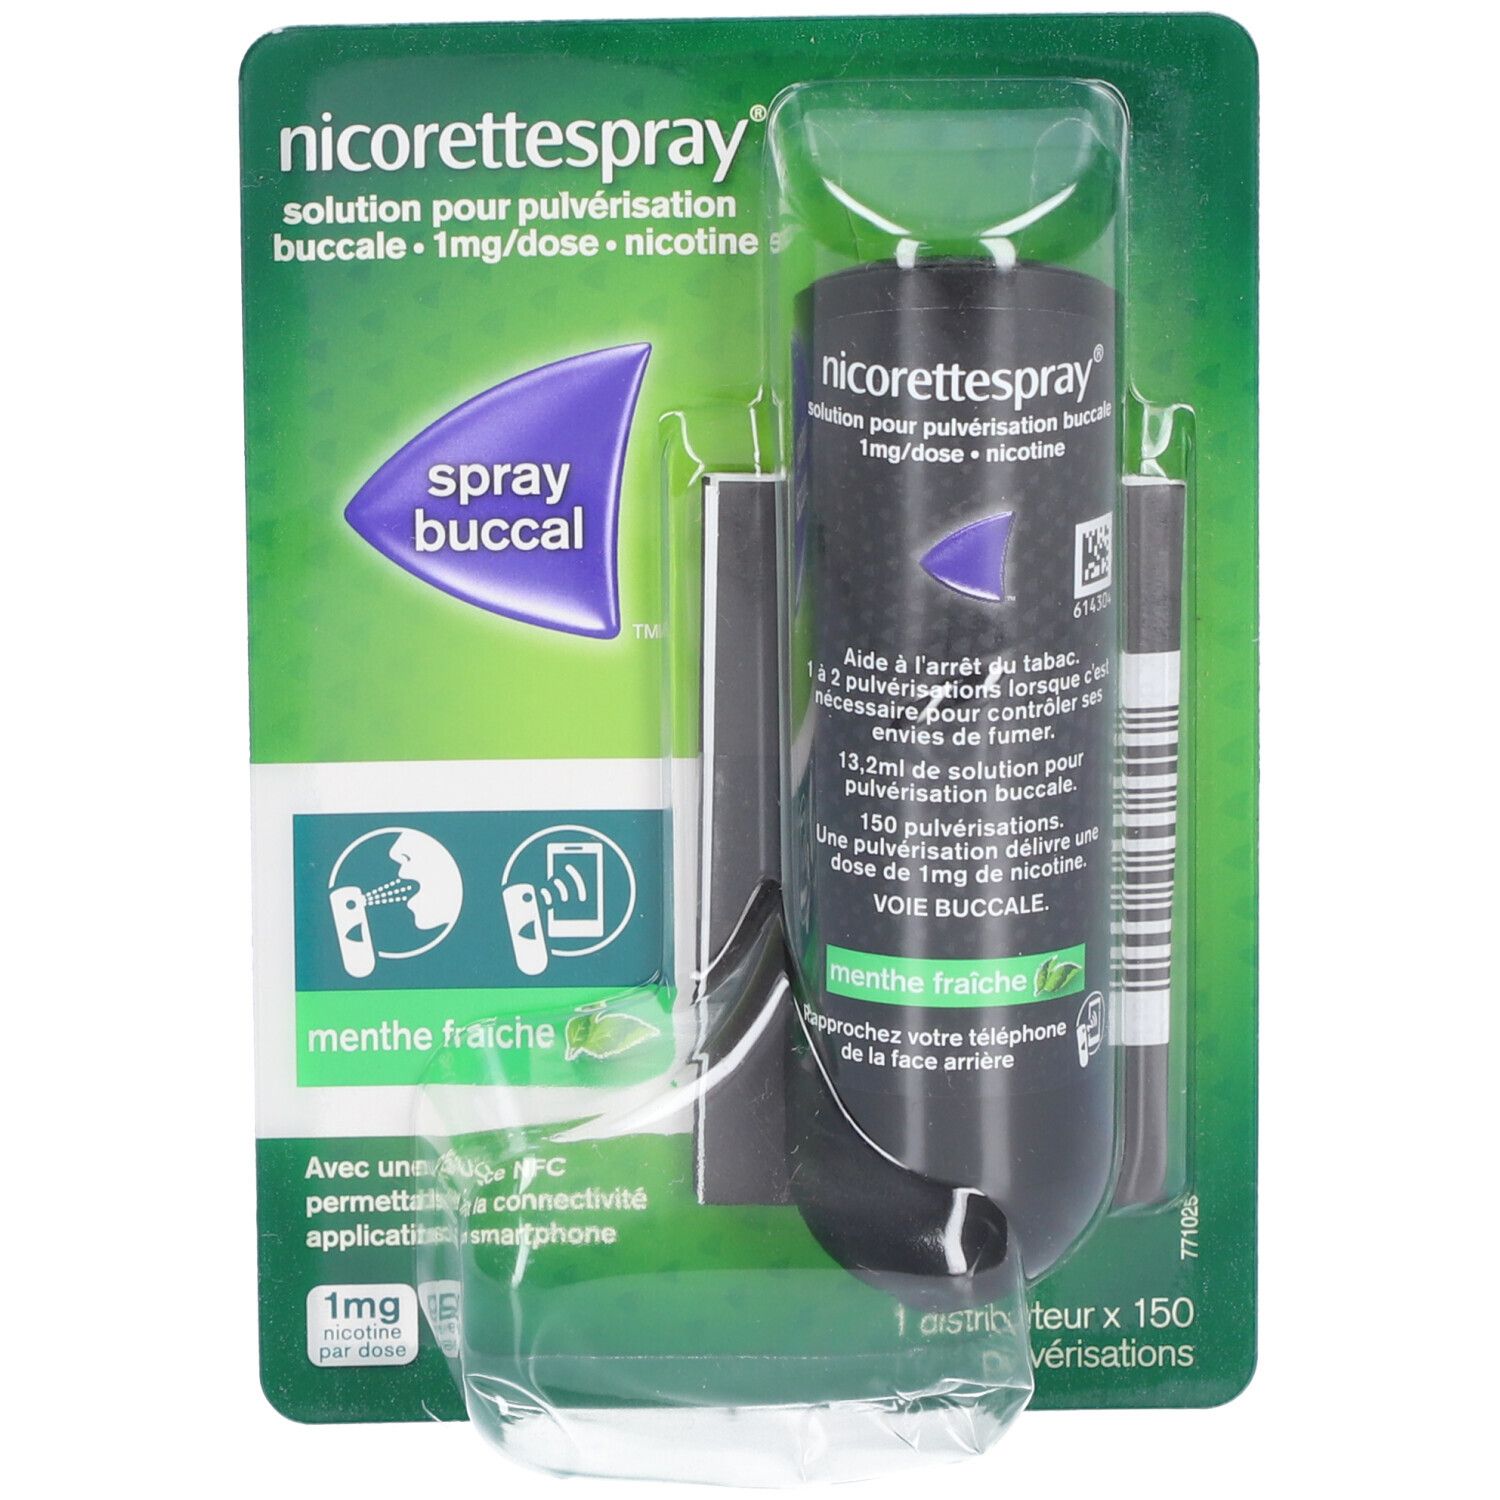 Nicorettespray 1 mg/dose, solution pour pulvérisation buccale, boîte de 1 flacon avec pomp